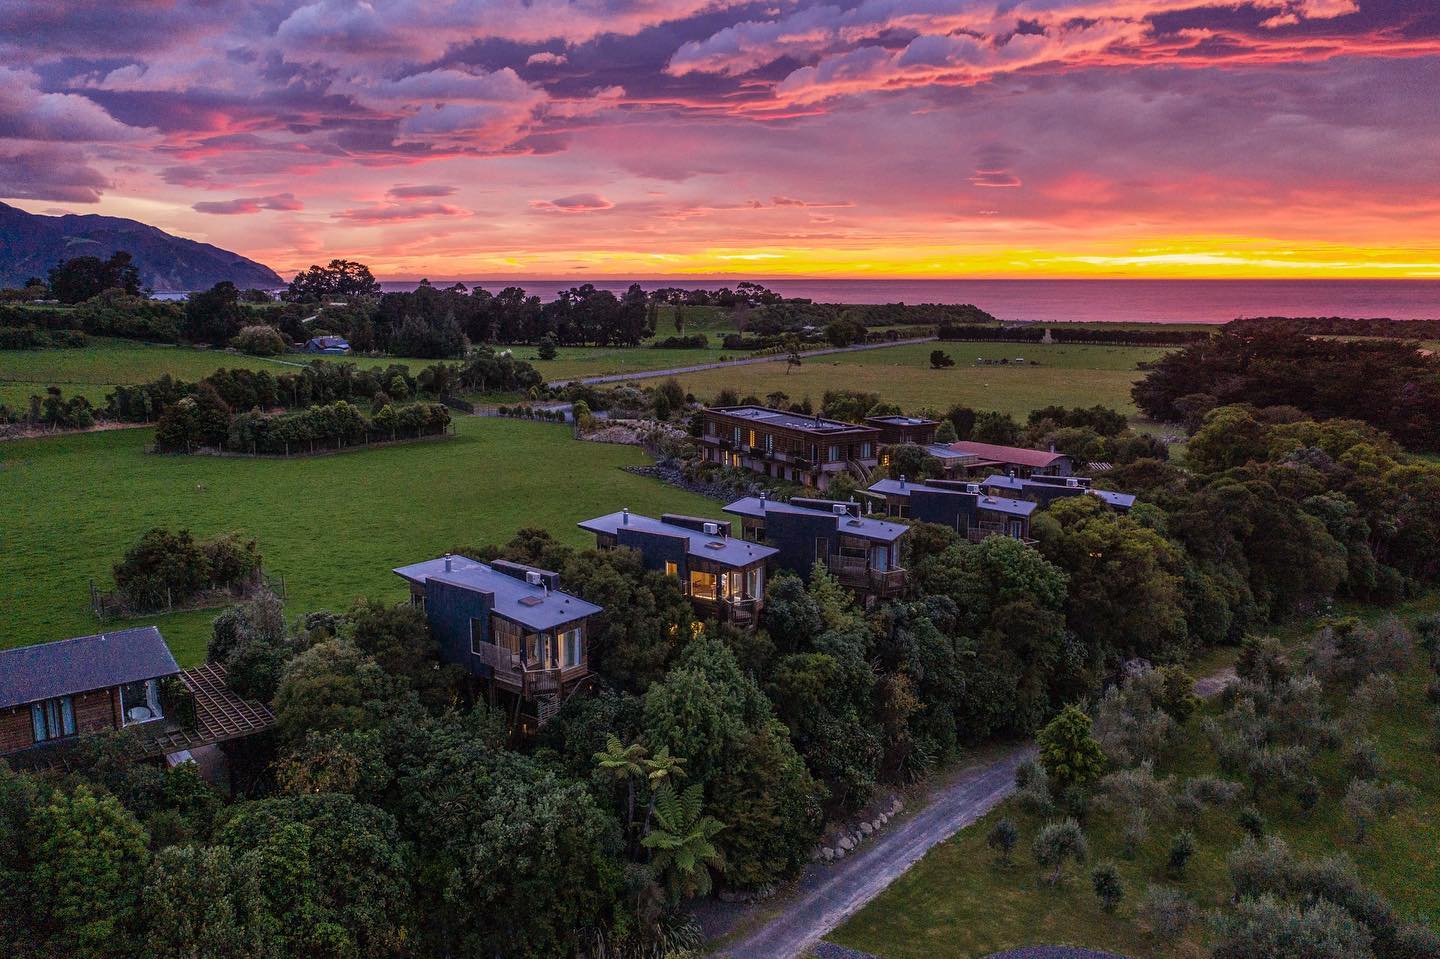 Sunrise and luxury safari lodge at Hapuku Lodge and treehouse, Newzealand